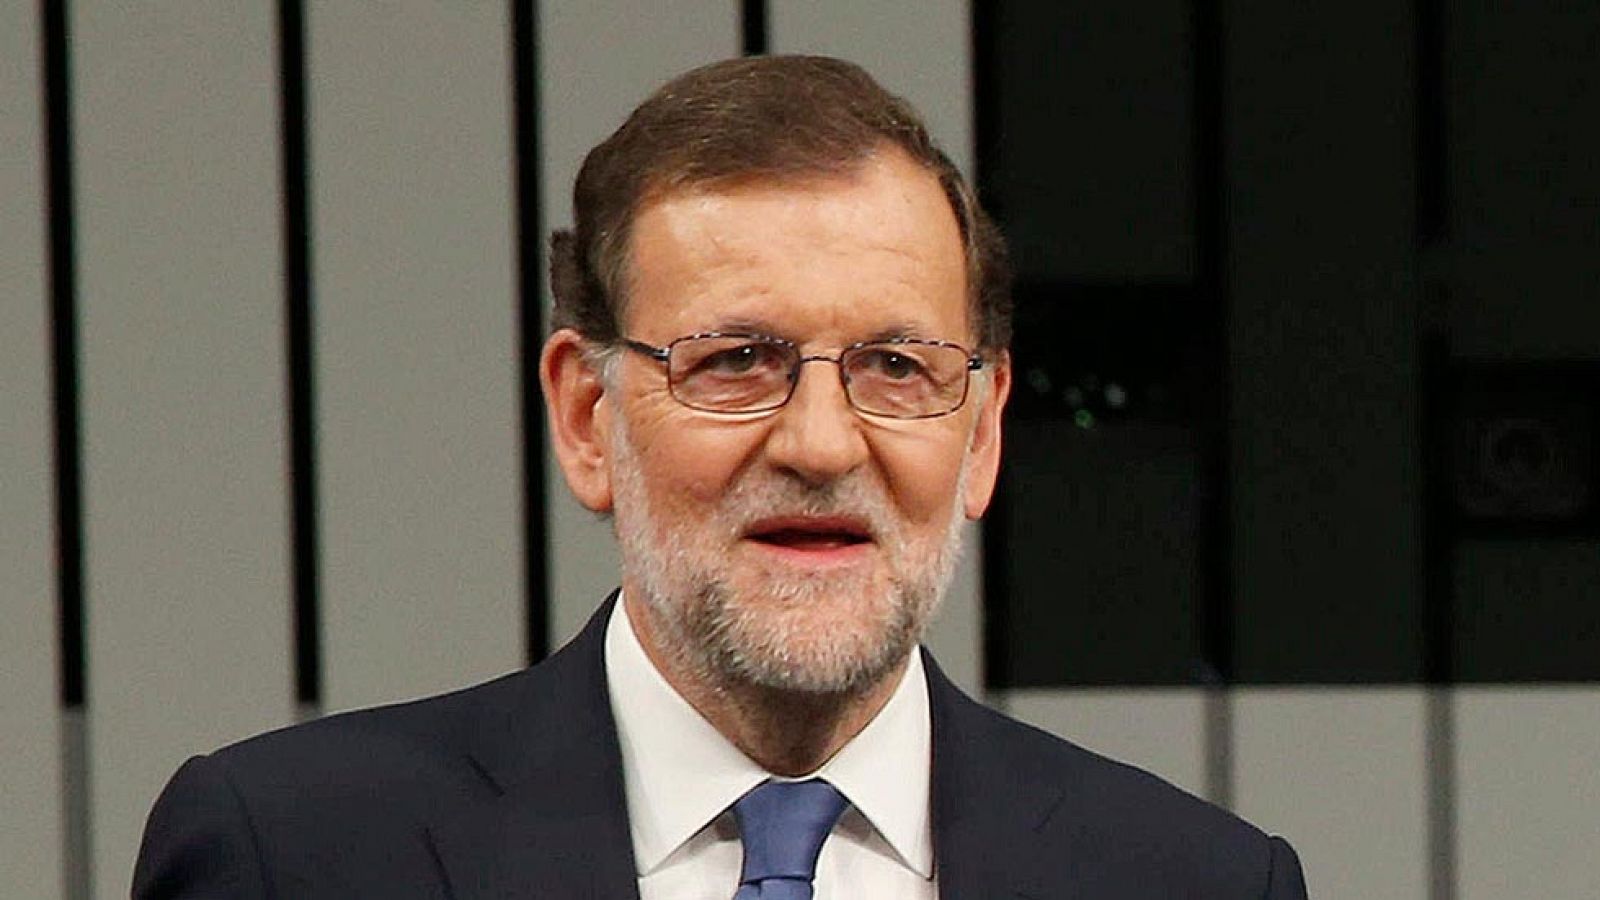 Minuto de oro | Rajoy: "Conseguiremos 2 millones de empleos en los próximos cuatro años"